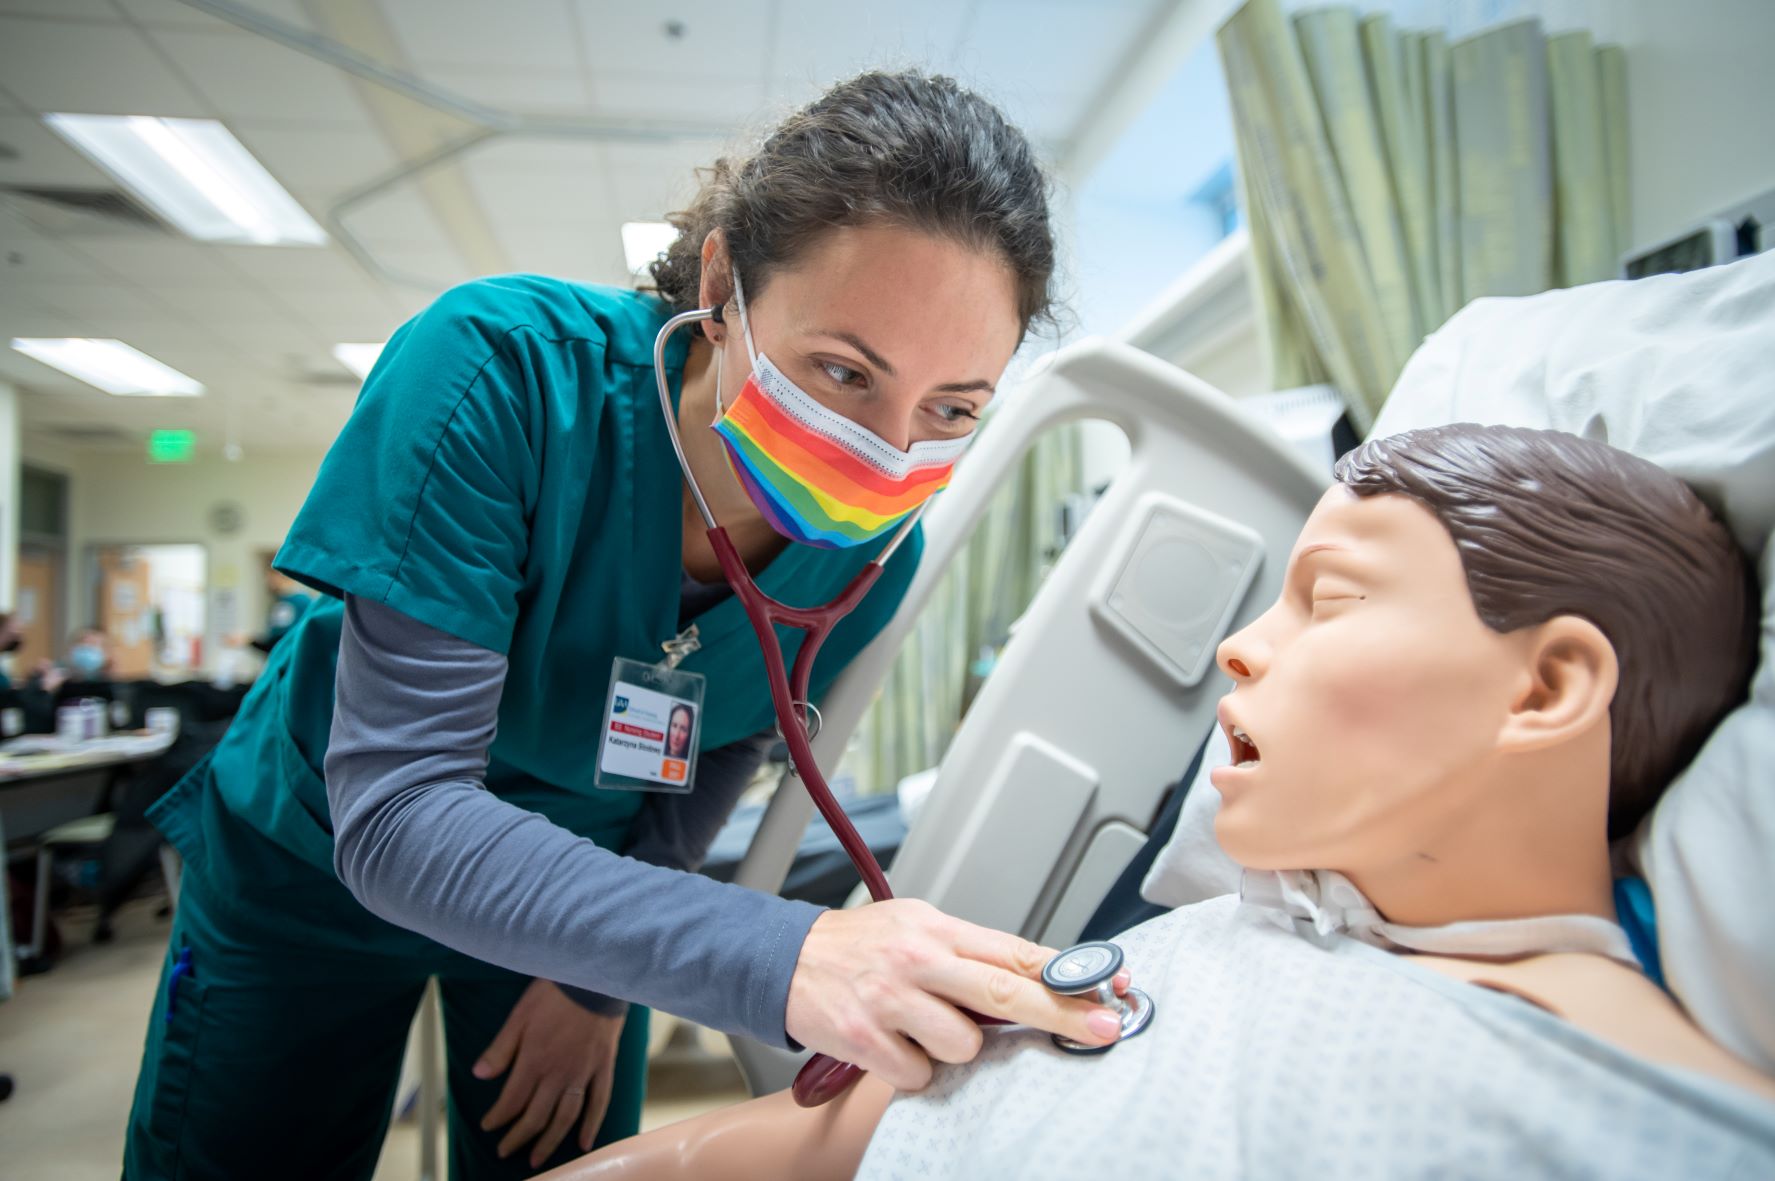 Undergraduate nursing student practicing on mannequin